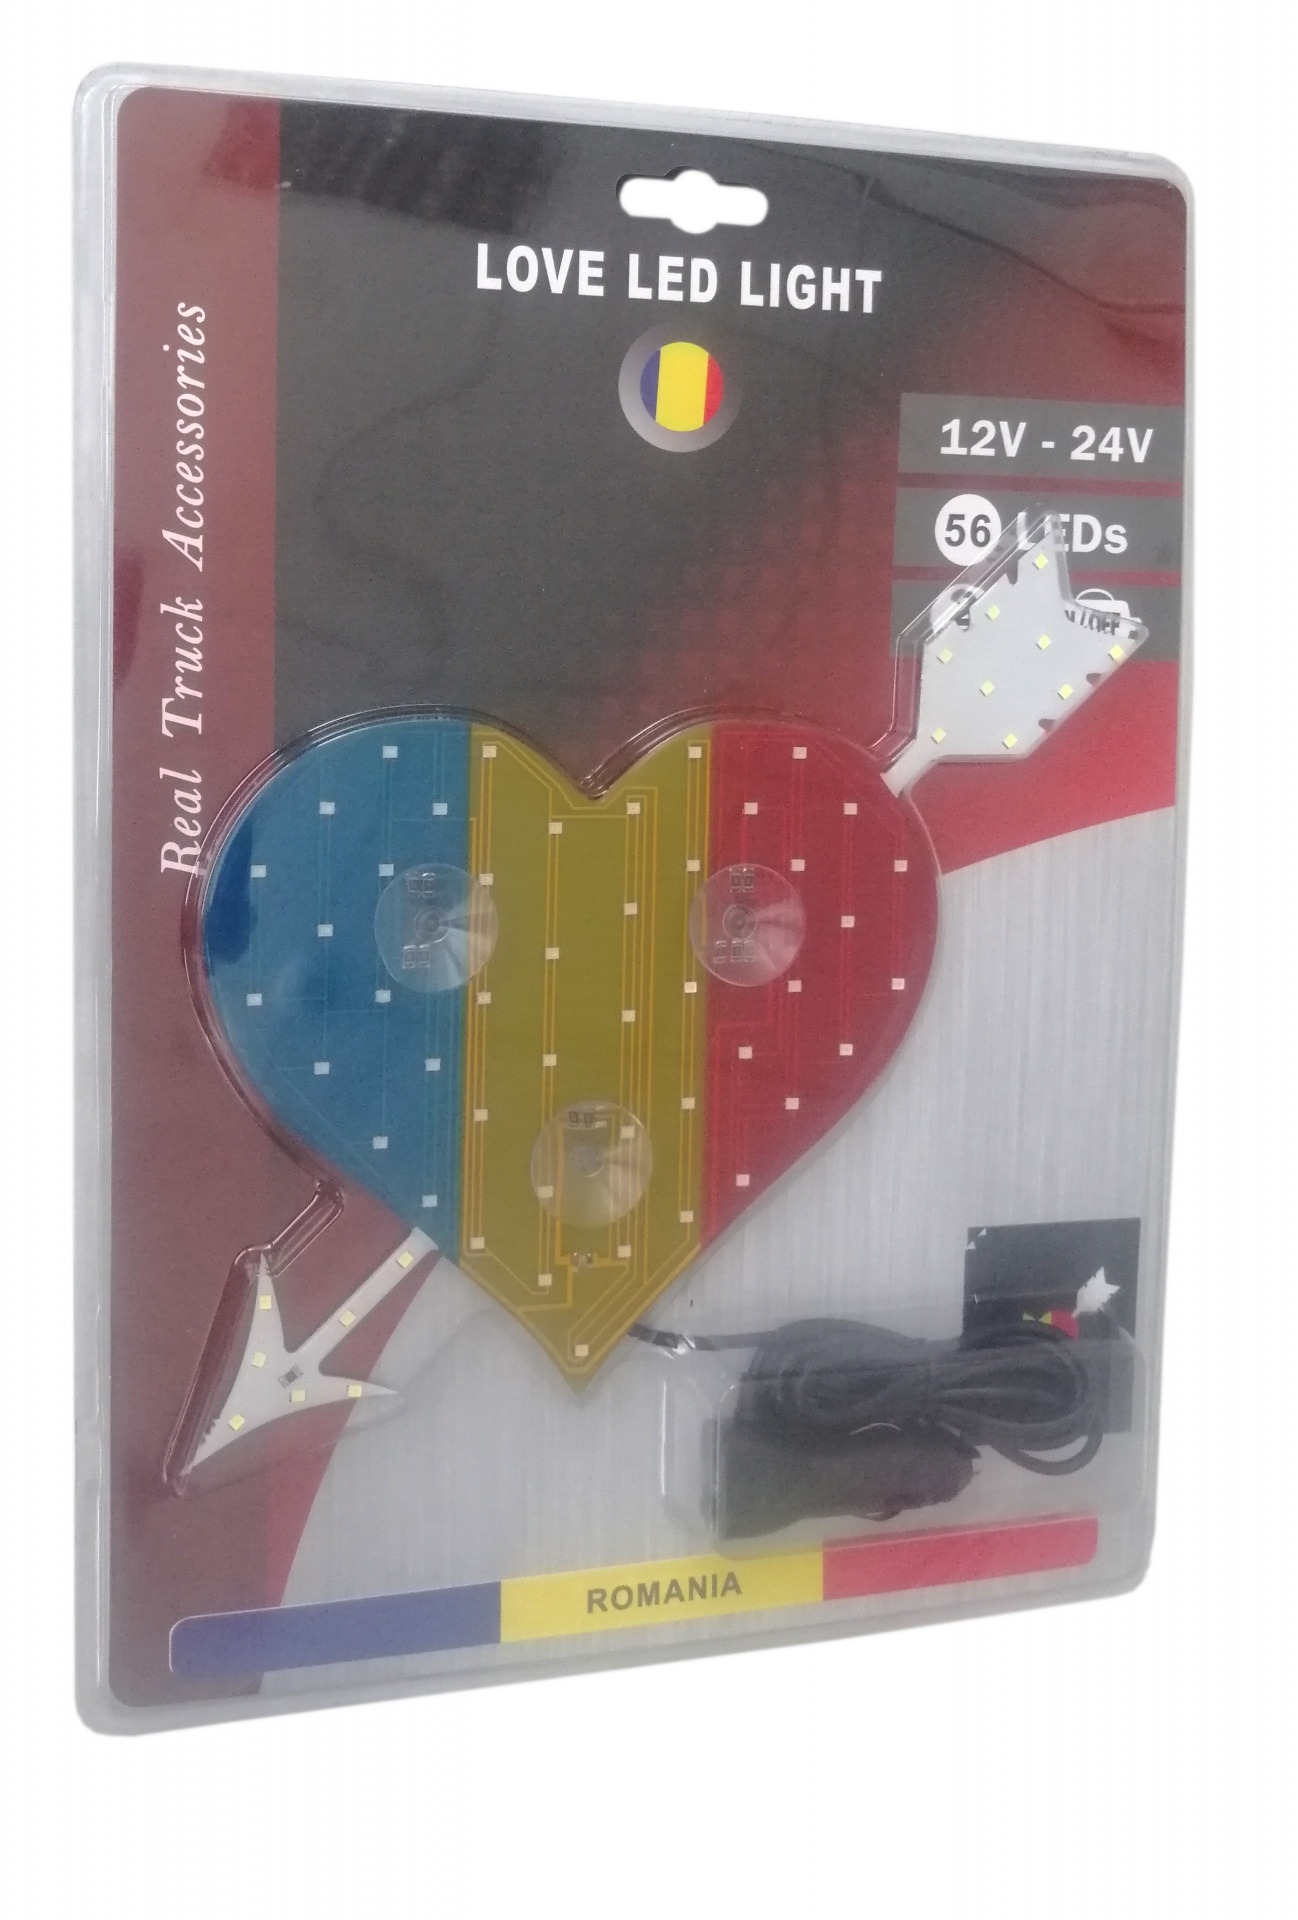 Сетодиодно светещo сърце в синьо-жълто-червено RO Romania флаг знаме Румъния 12V - 24V 54 LED ЛЕД